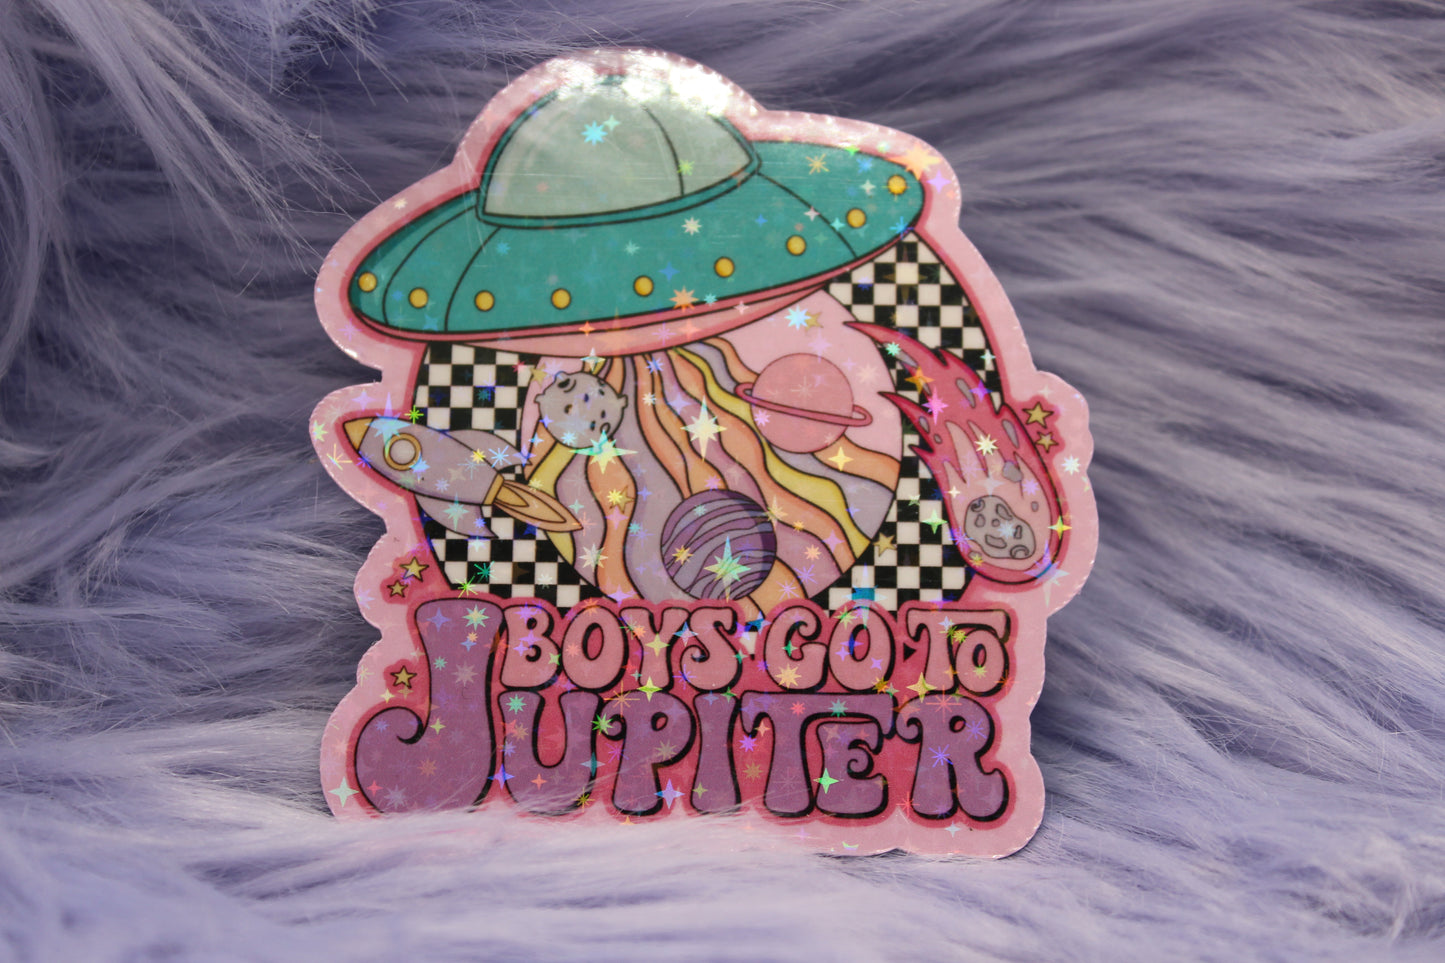 Boys Go To Jupiter